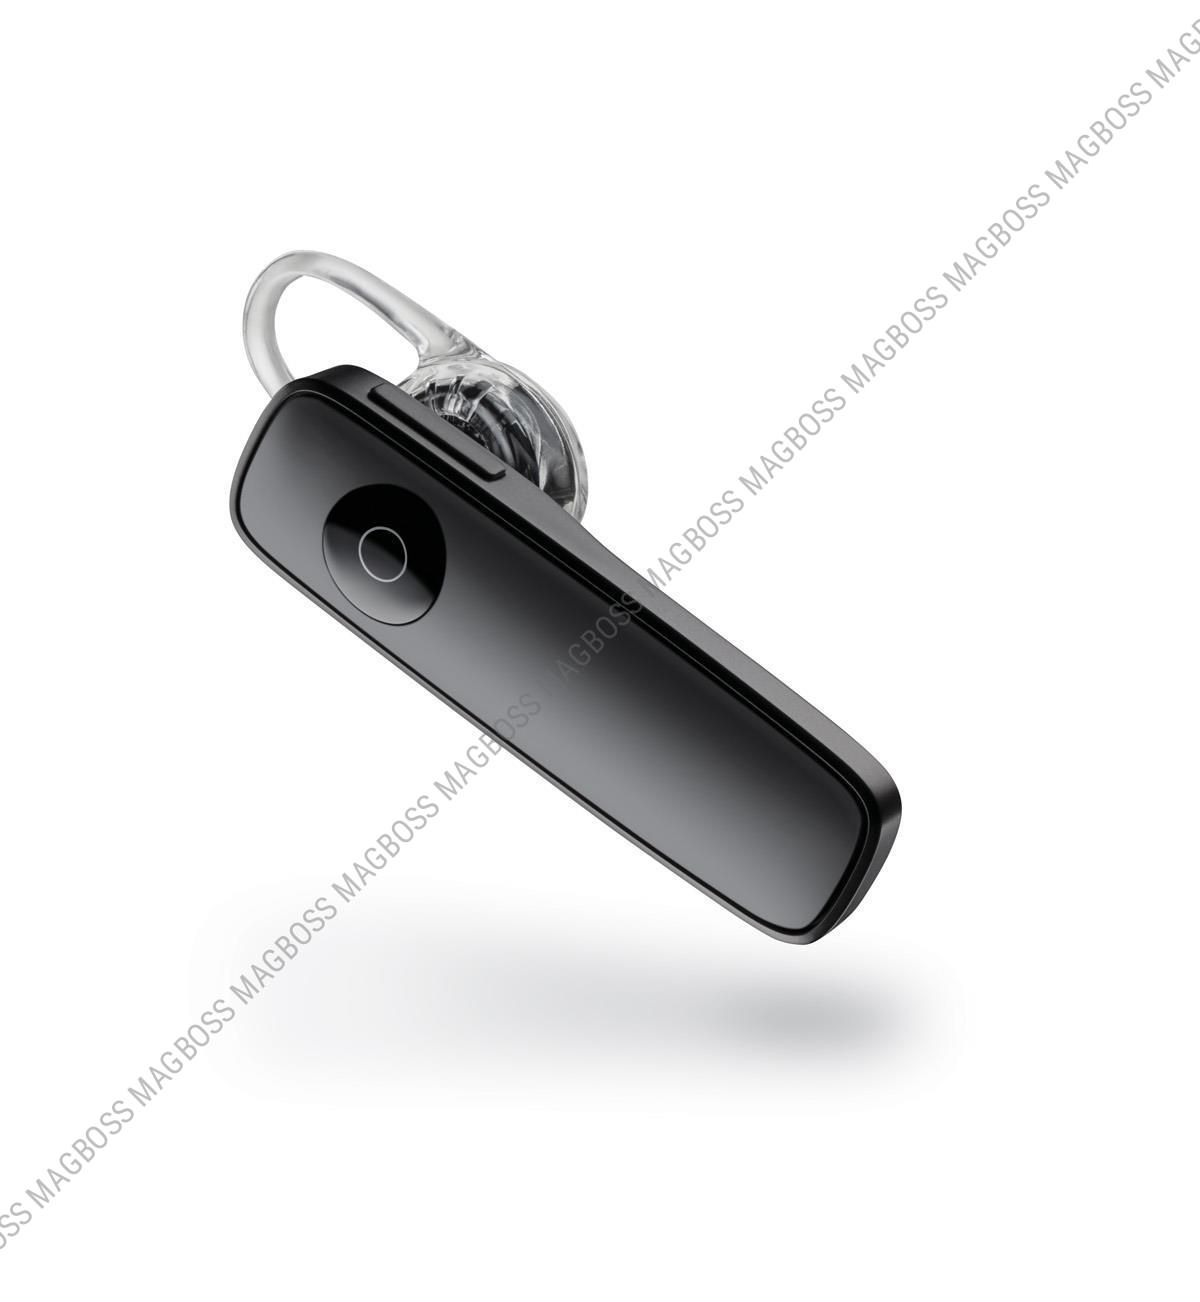 88120-05 - Słuchawka Bluetooth Plantronics M165 - czarna (oryginalna)